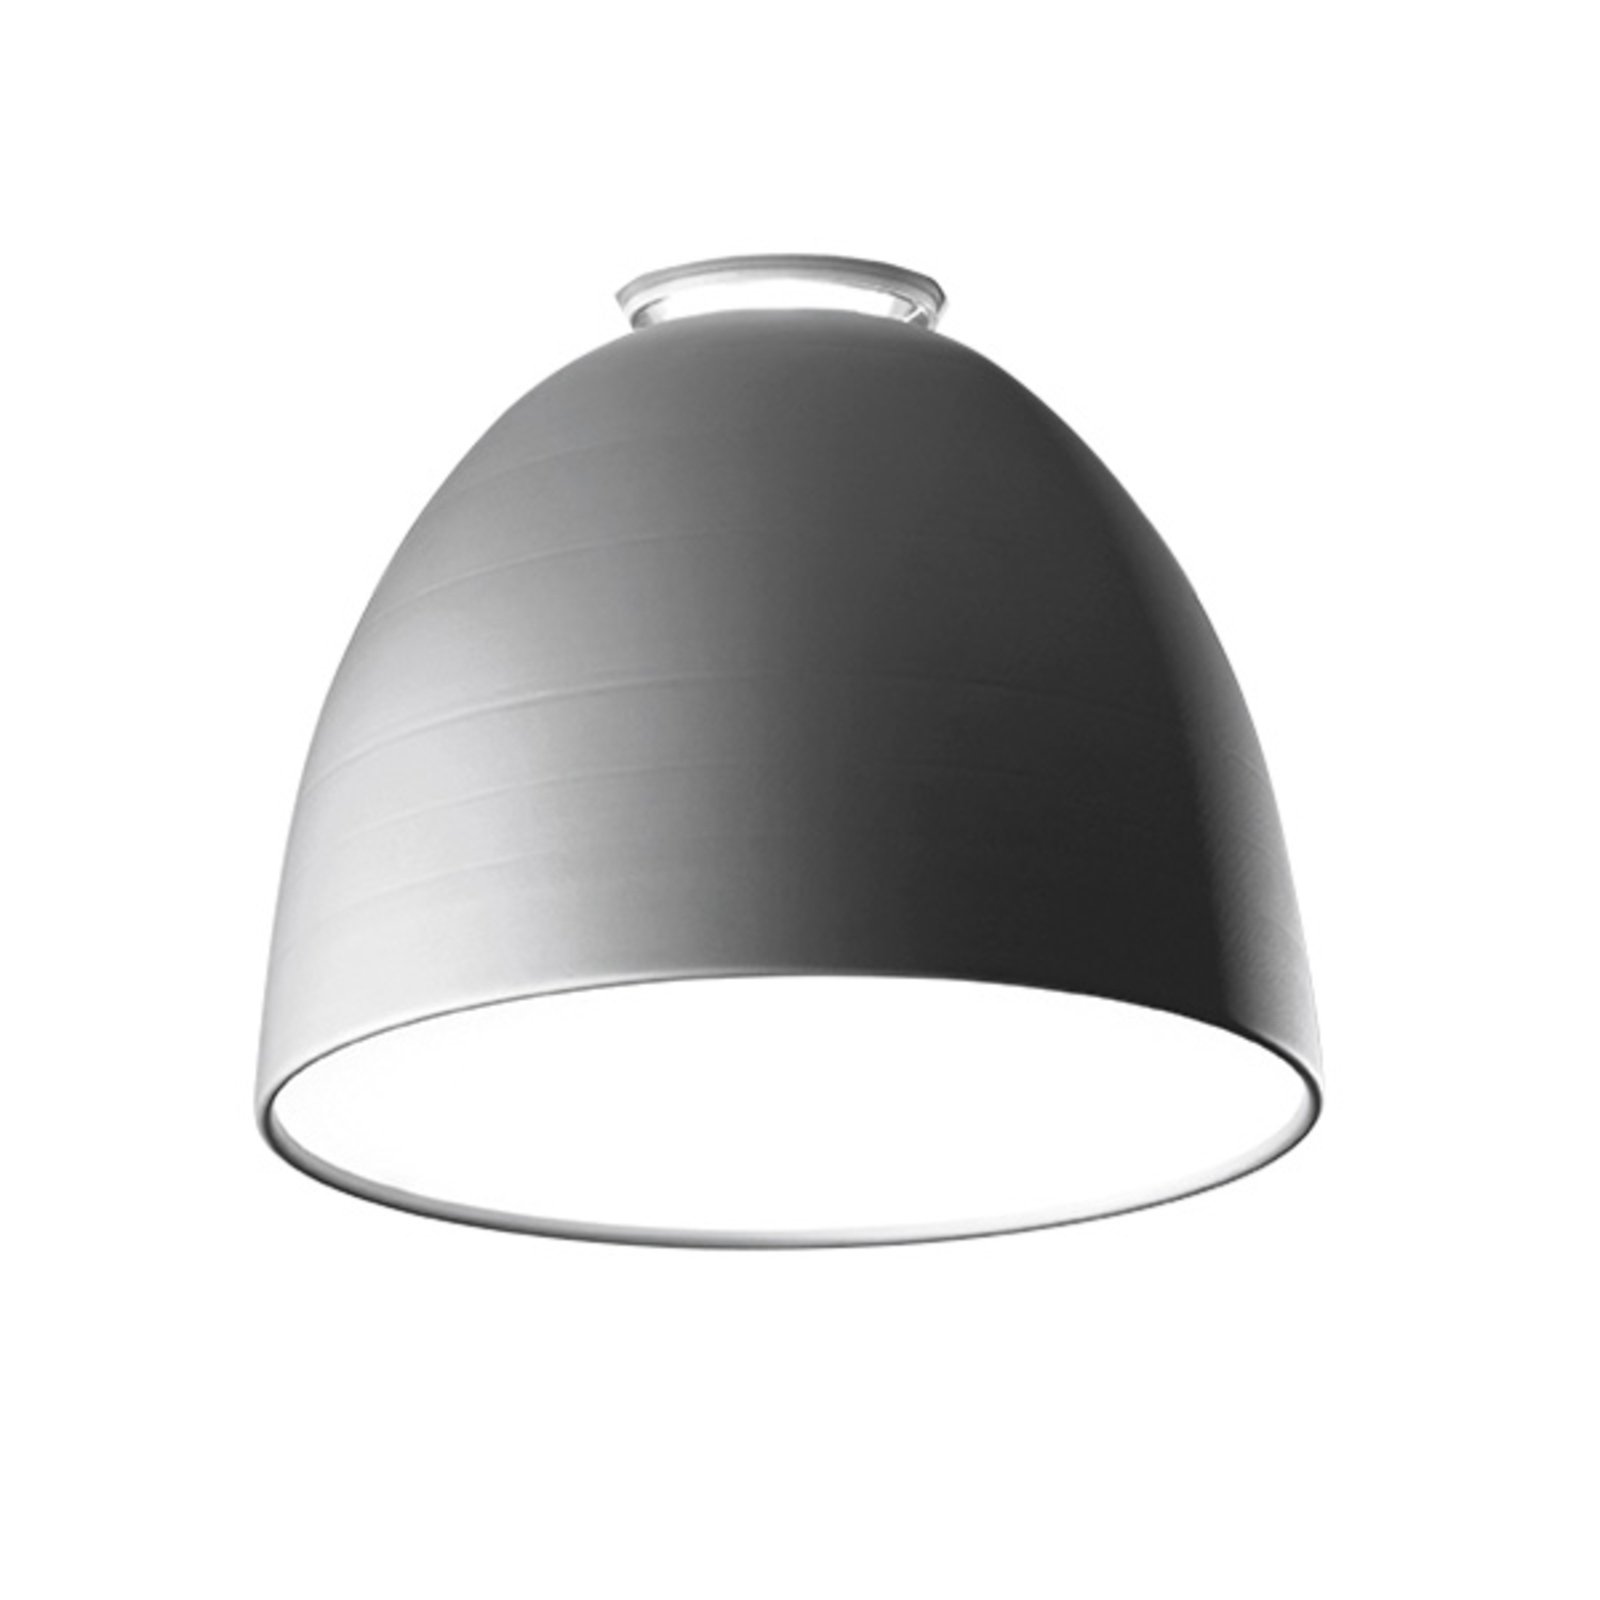 Artemide Nur Mini LED ceiling light, aluminium